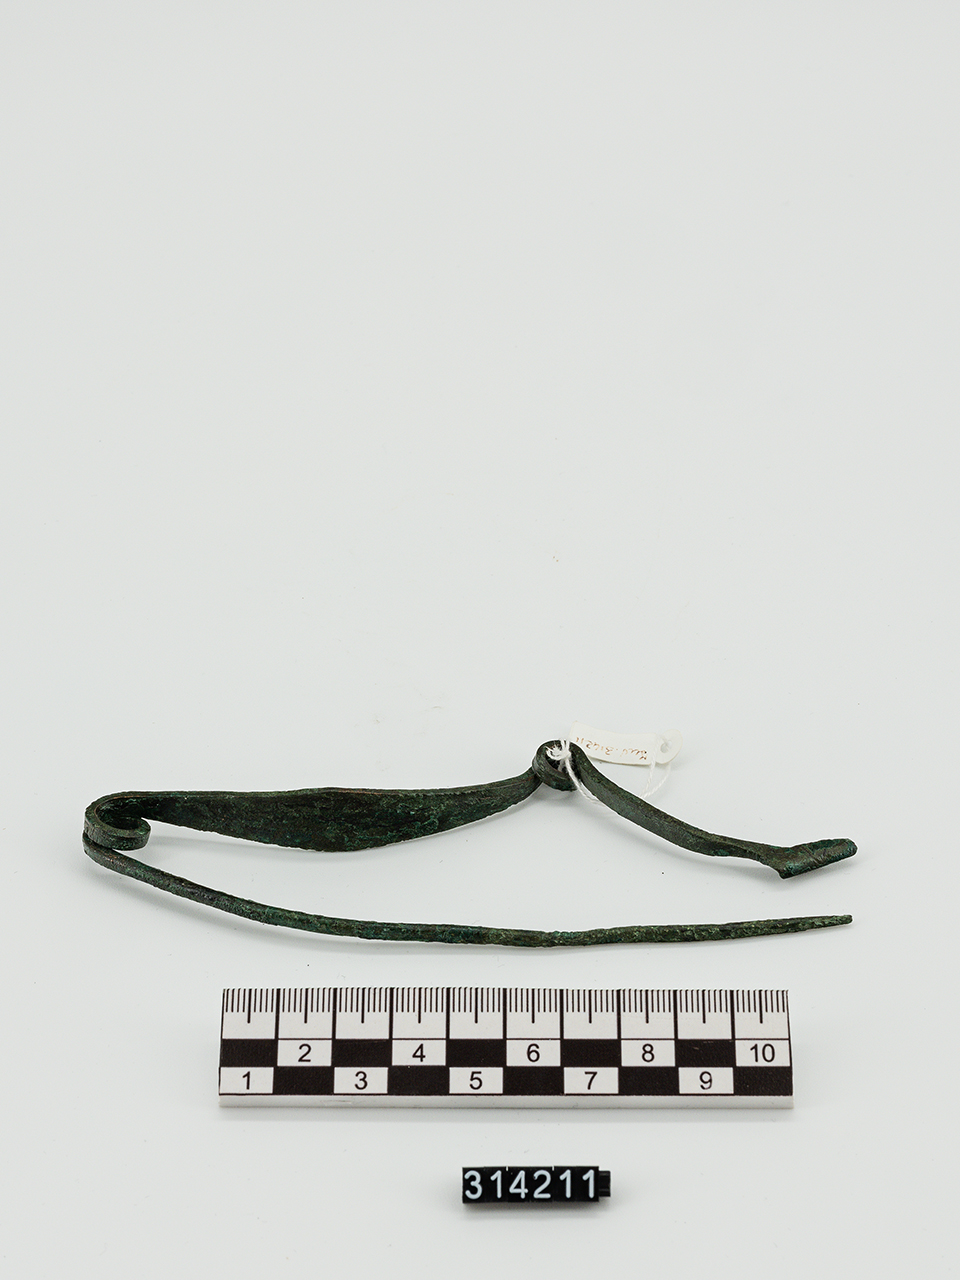 fibula/ serpeggiante (VIII a.C)